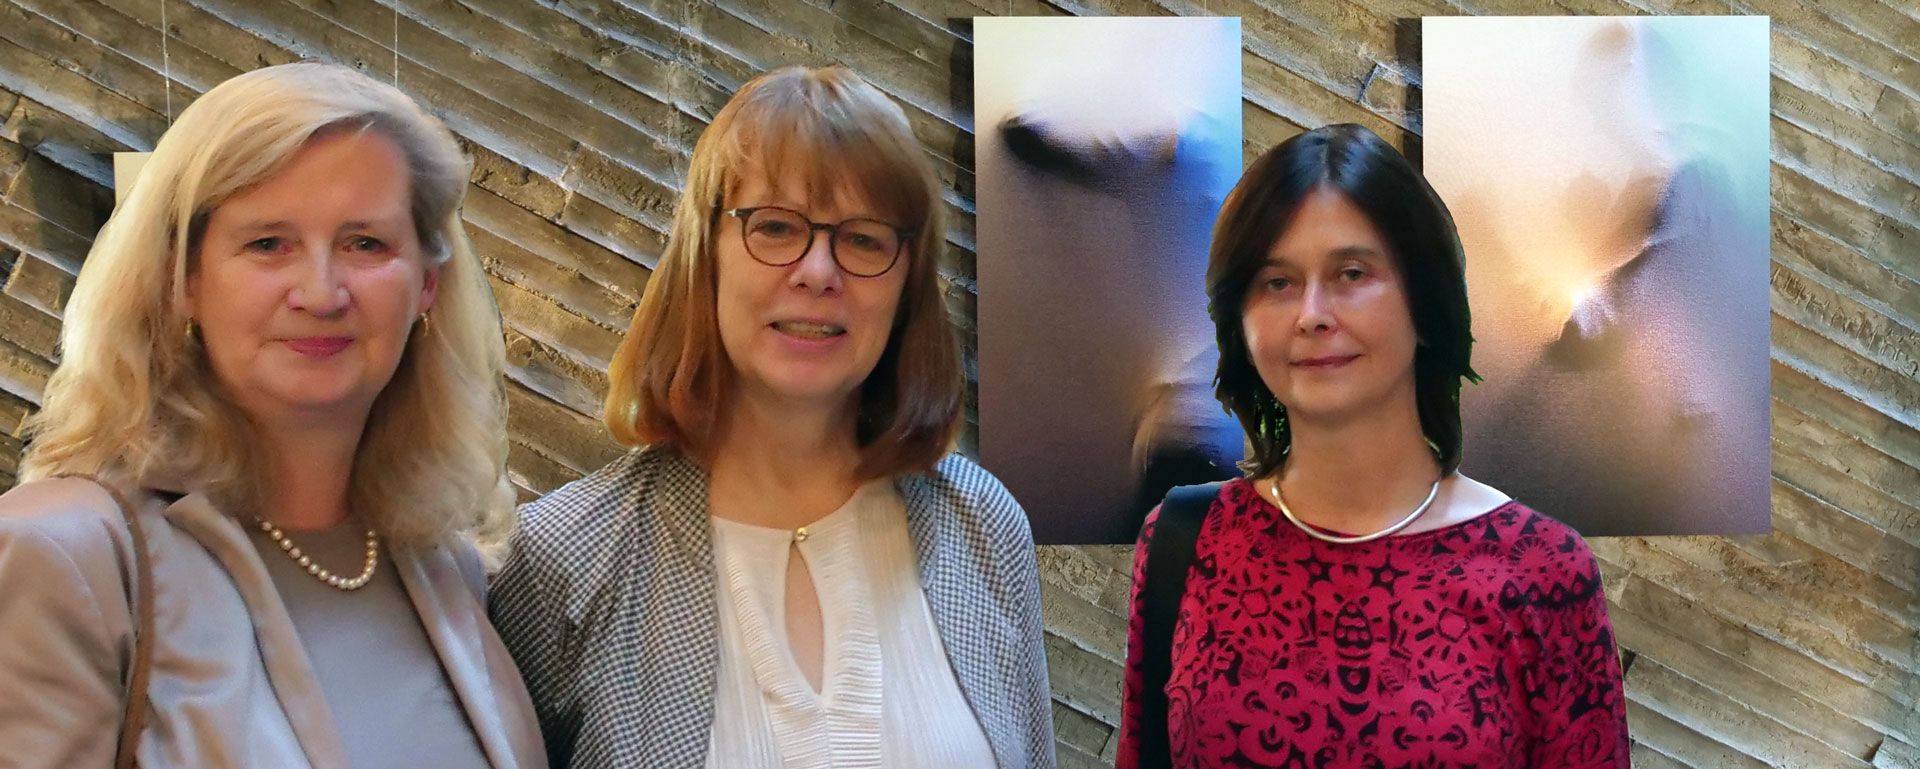 Reni Scholz (M.) bei der Ausstellungseröffnung "Kollaborate" mit Myriam Thyes (r.) und Prof. Irene Daum in unserer Kulturkirche Ost in Köln